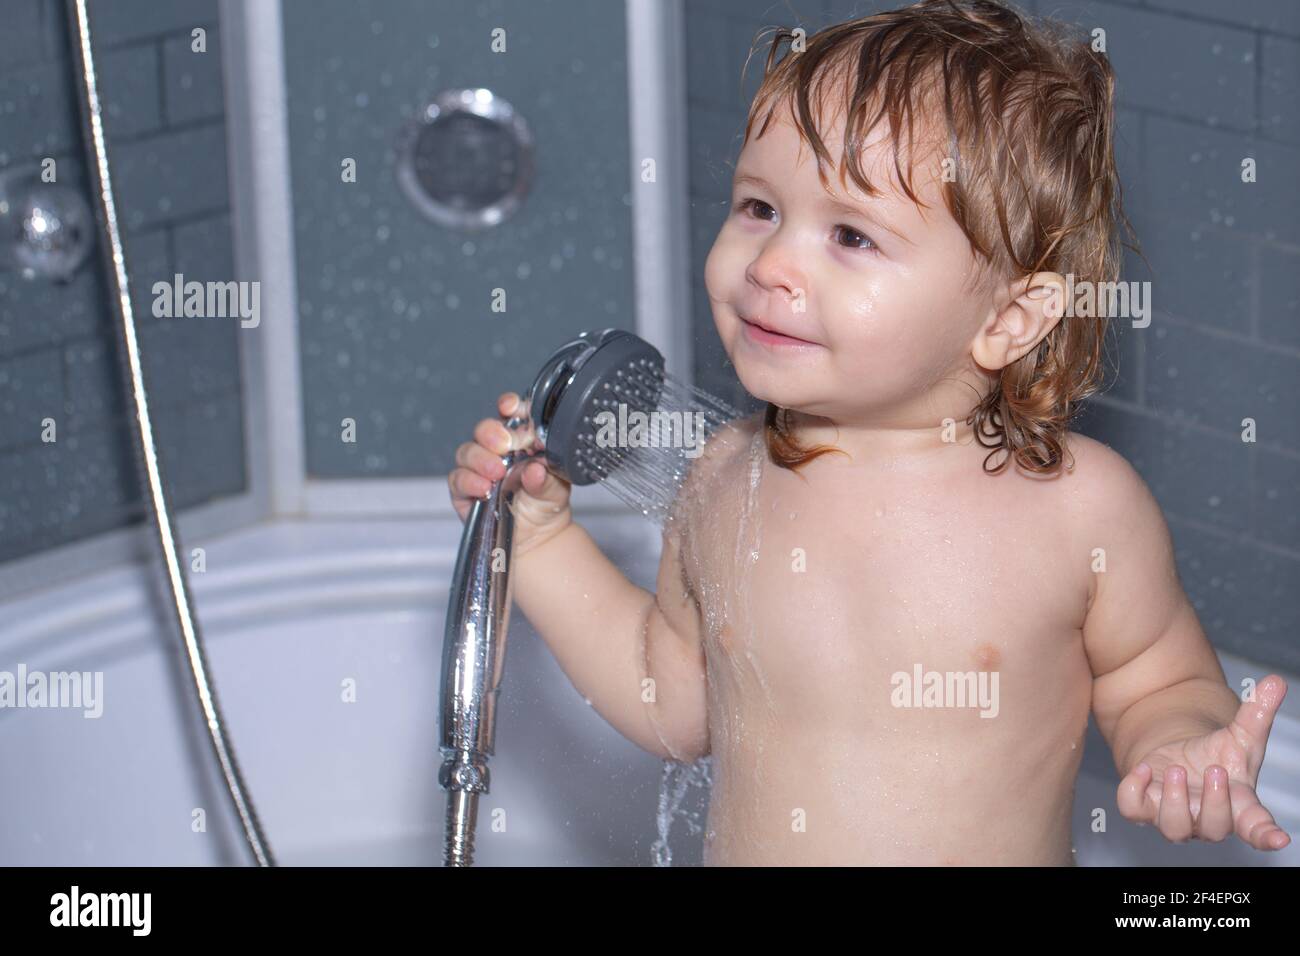 Baby Duschen. Porträt des Kindes Baden in einem Bad mit Schaum. Lustige  Kinder Gesicht Nahaufnahme. Kinder baden unter der Dusche Stockfotografie -  Alamy